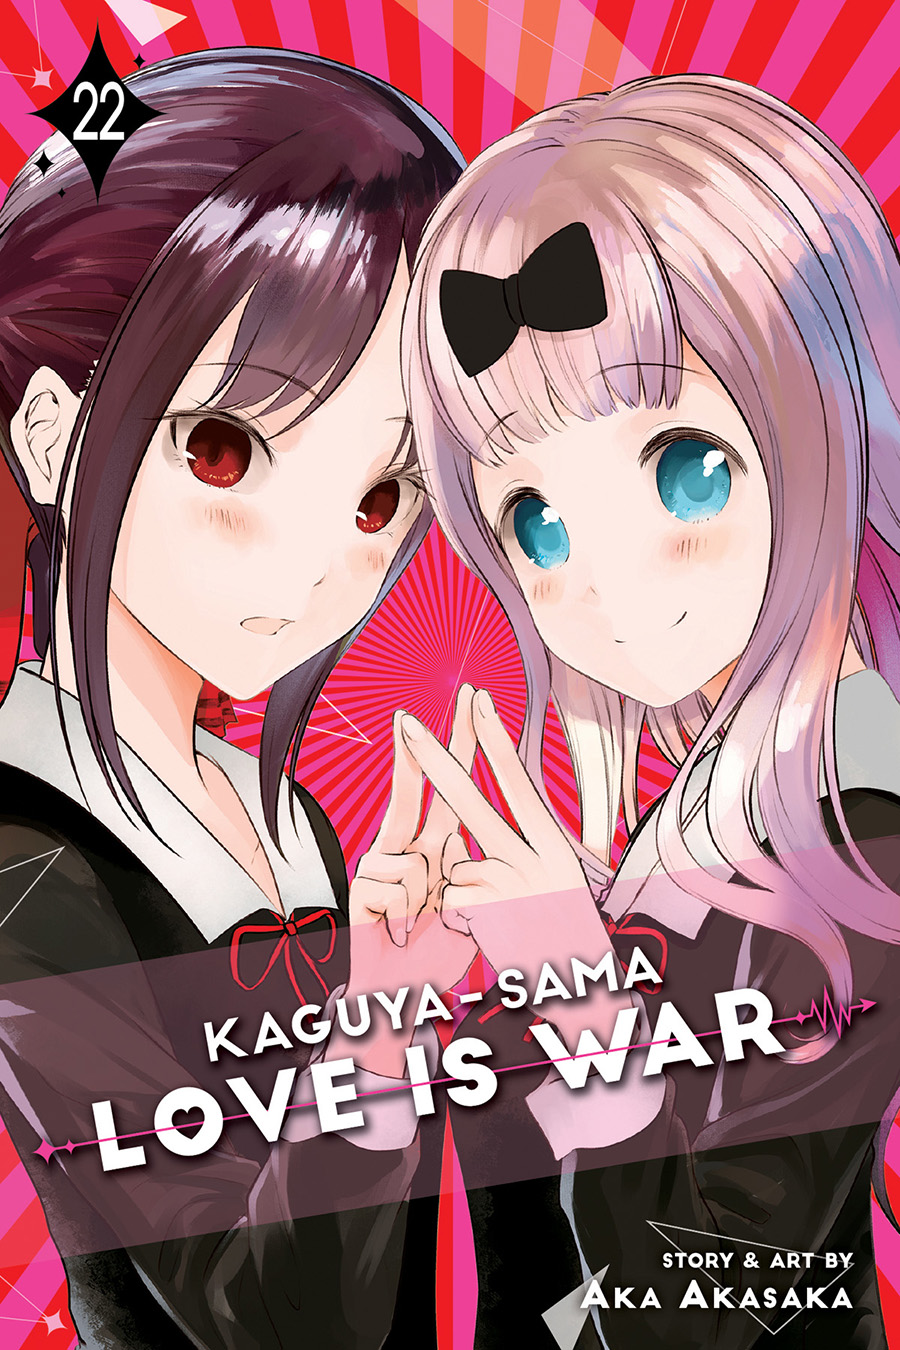 Kaguya-Sama Love Is War Vol 22 GN